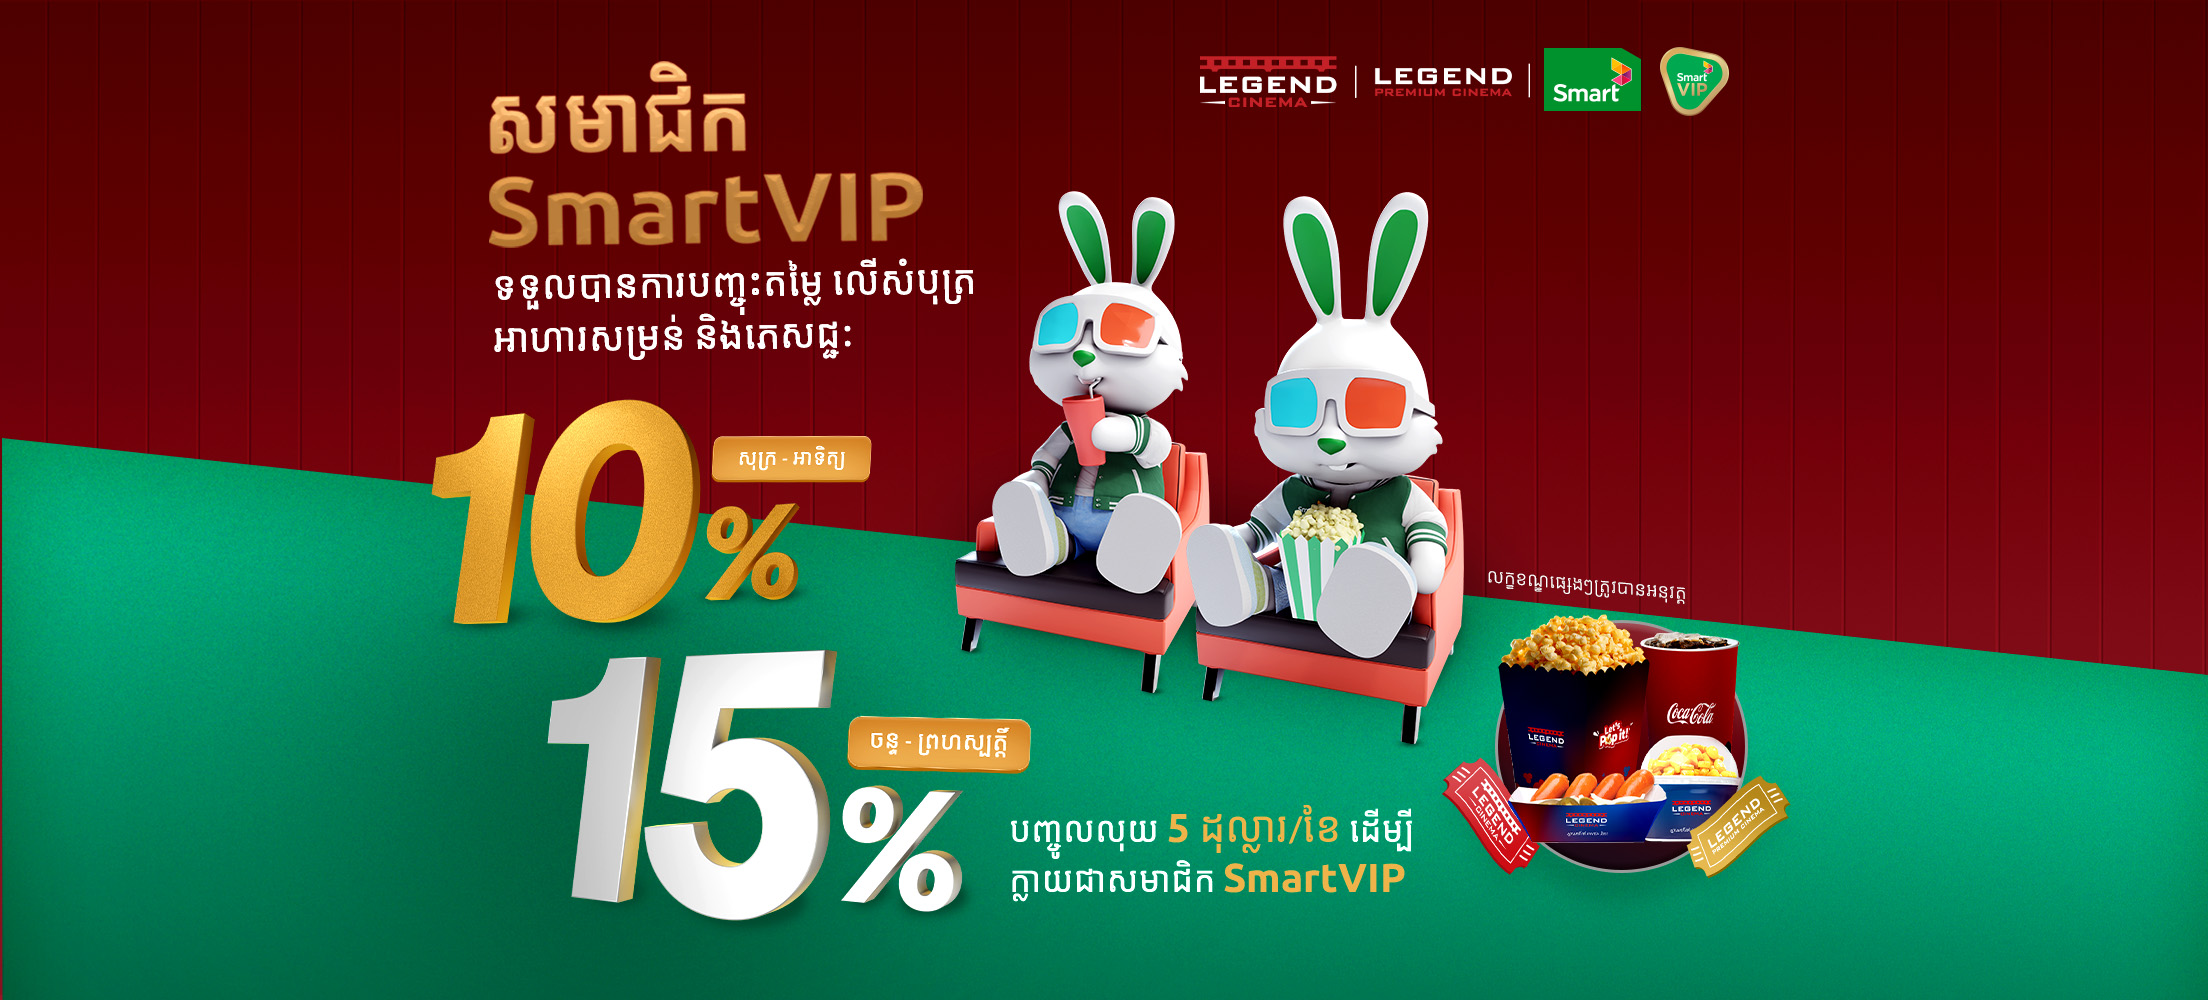 Legend x SmartVIP Promotion (Web Banner).jpg